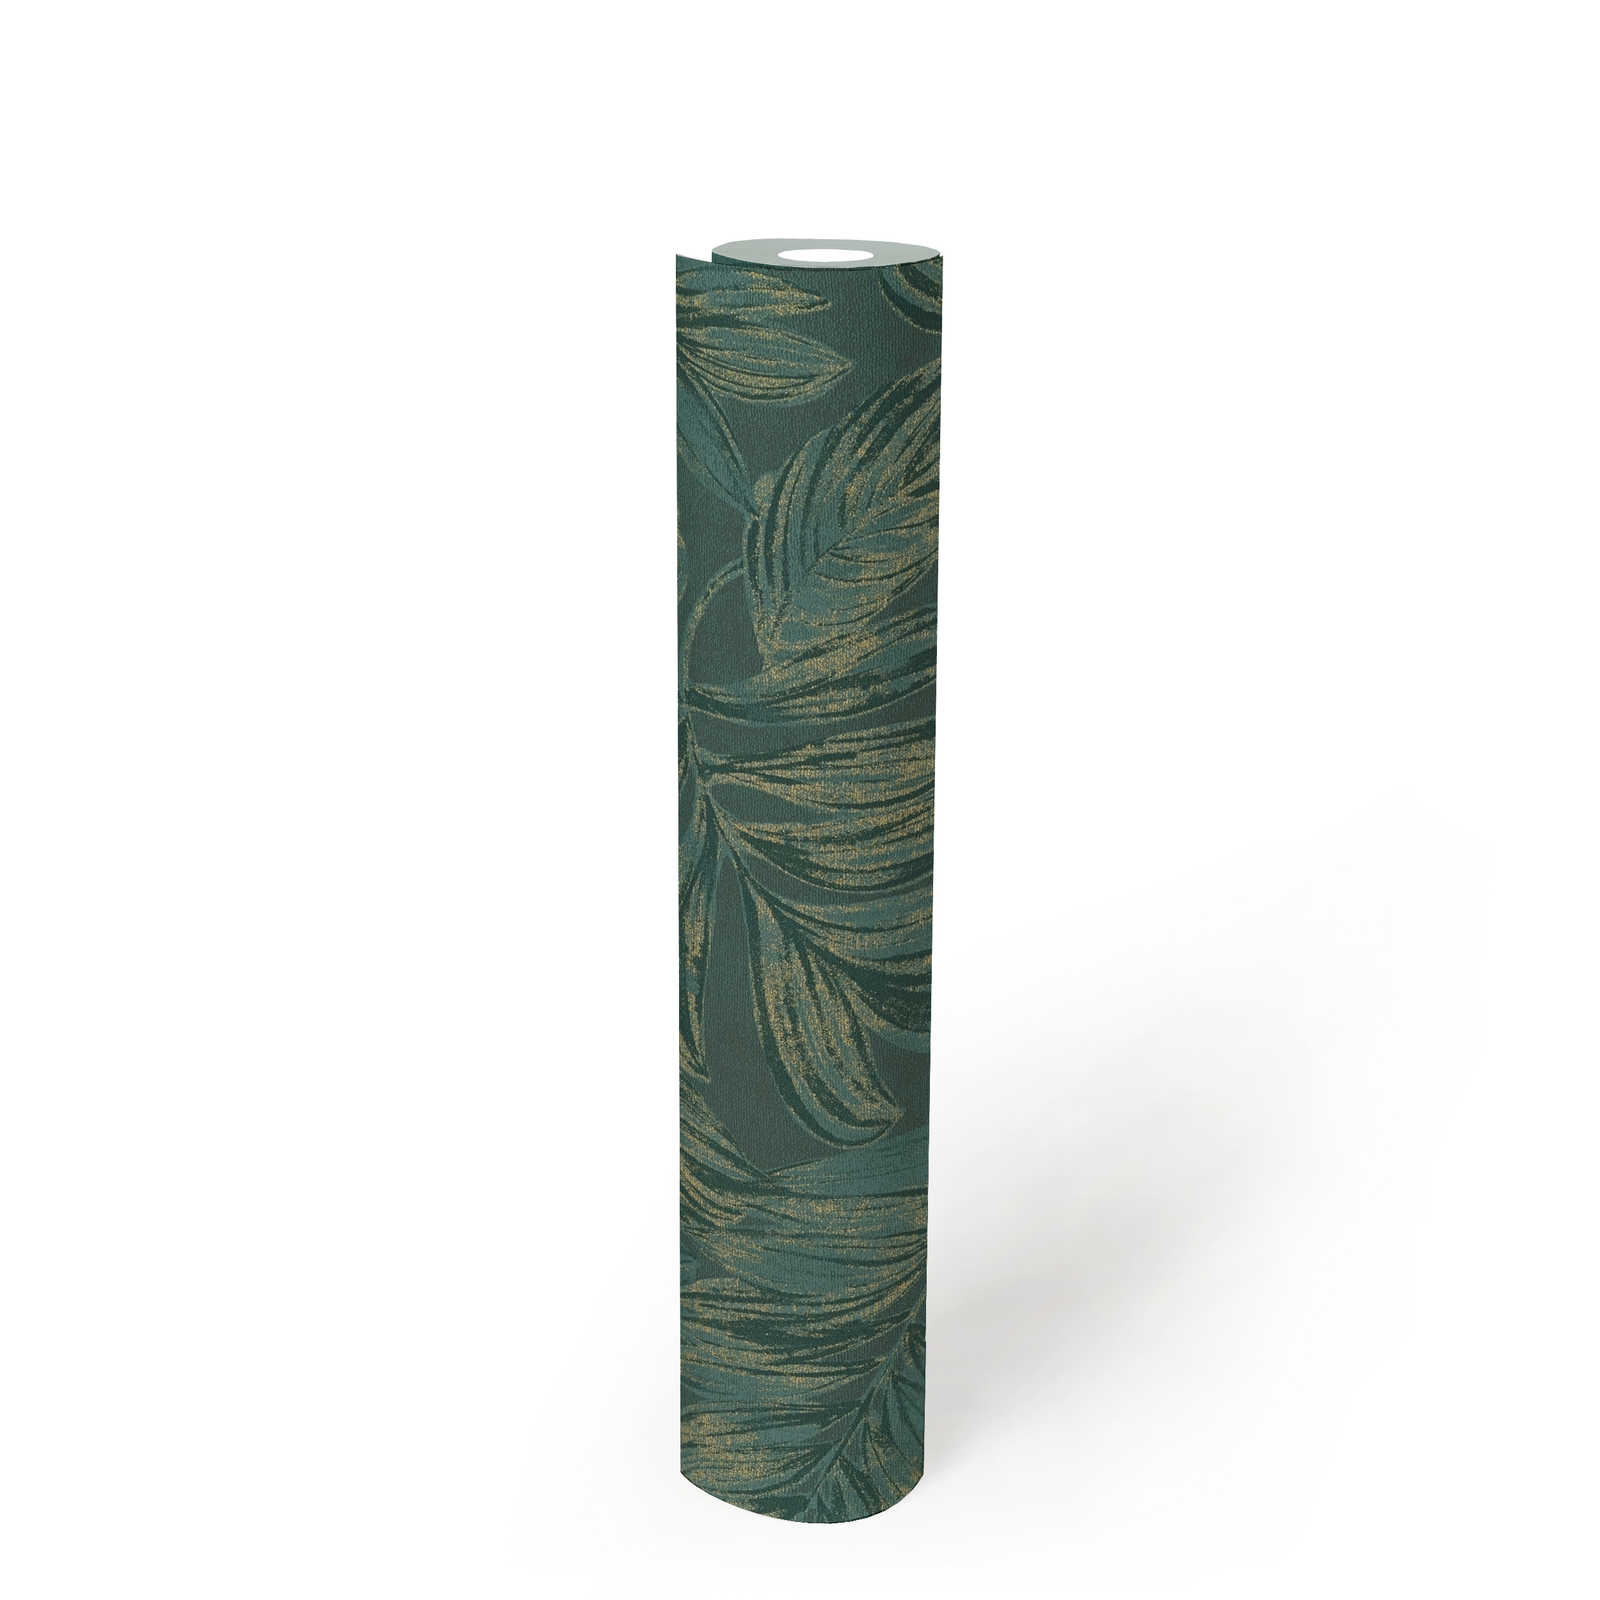             papier peint en papier intissé floral avec motif de feuilles avec détails dorés - vert, or
        